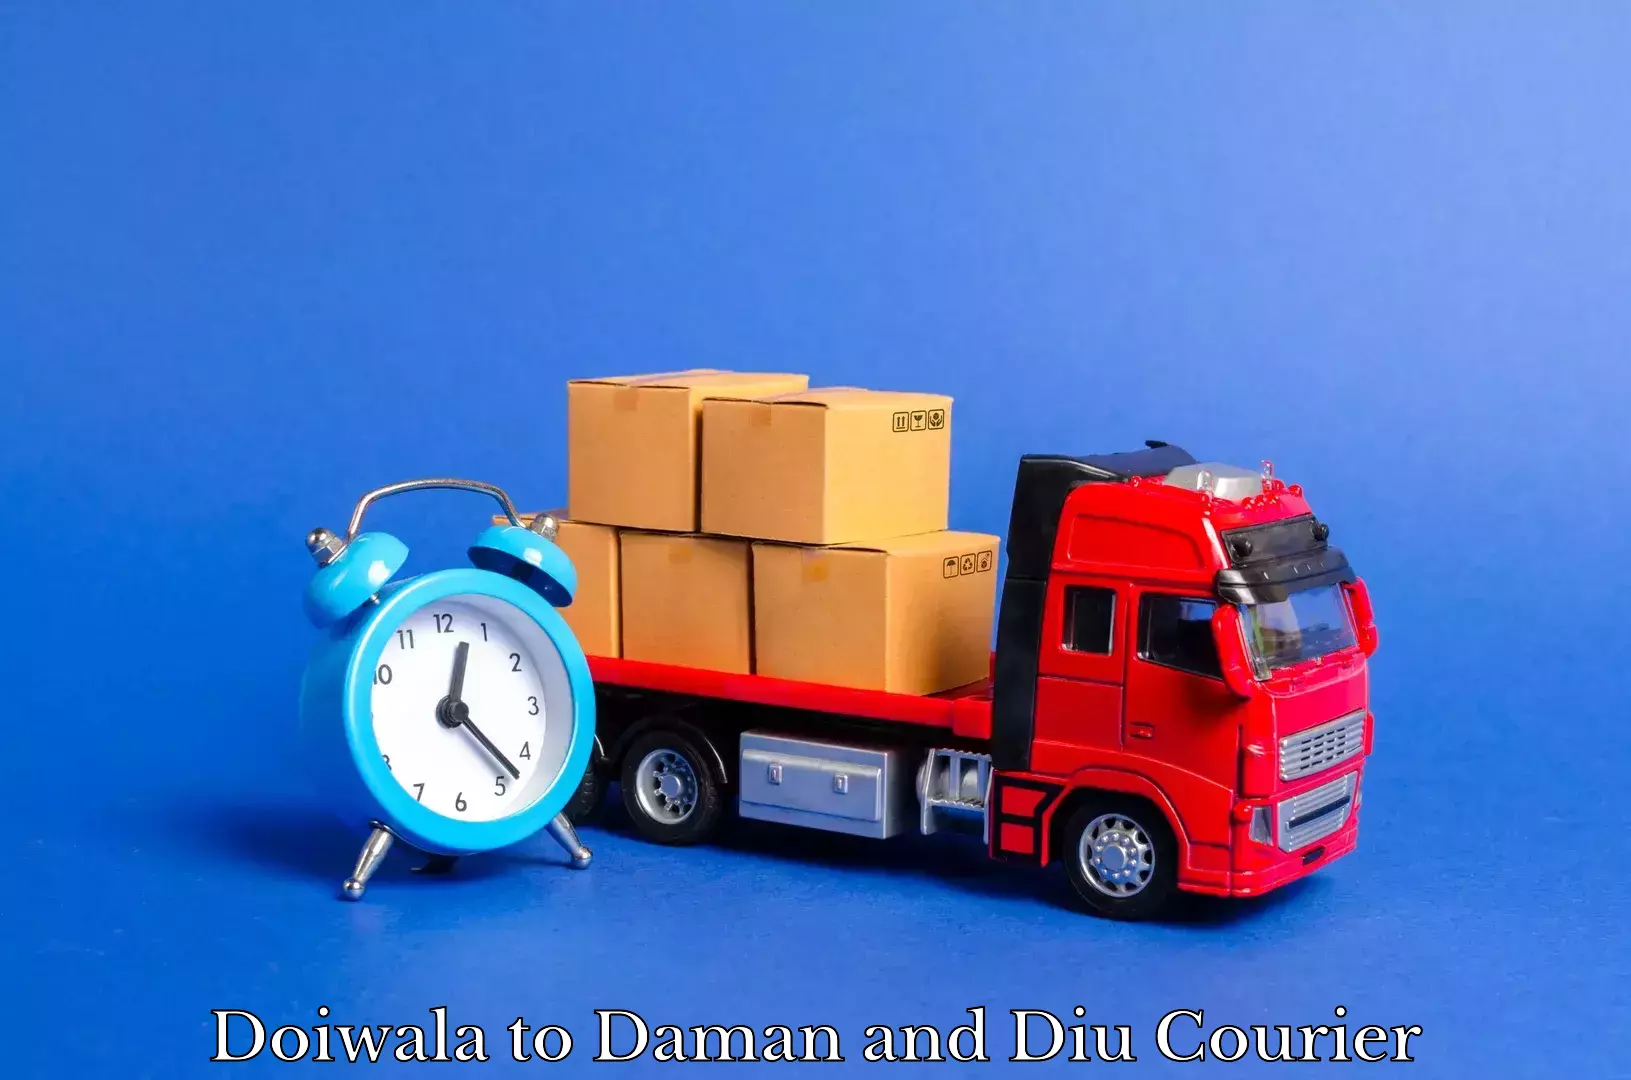 Furniture transport experts Doiwala to Daman and Diu